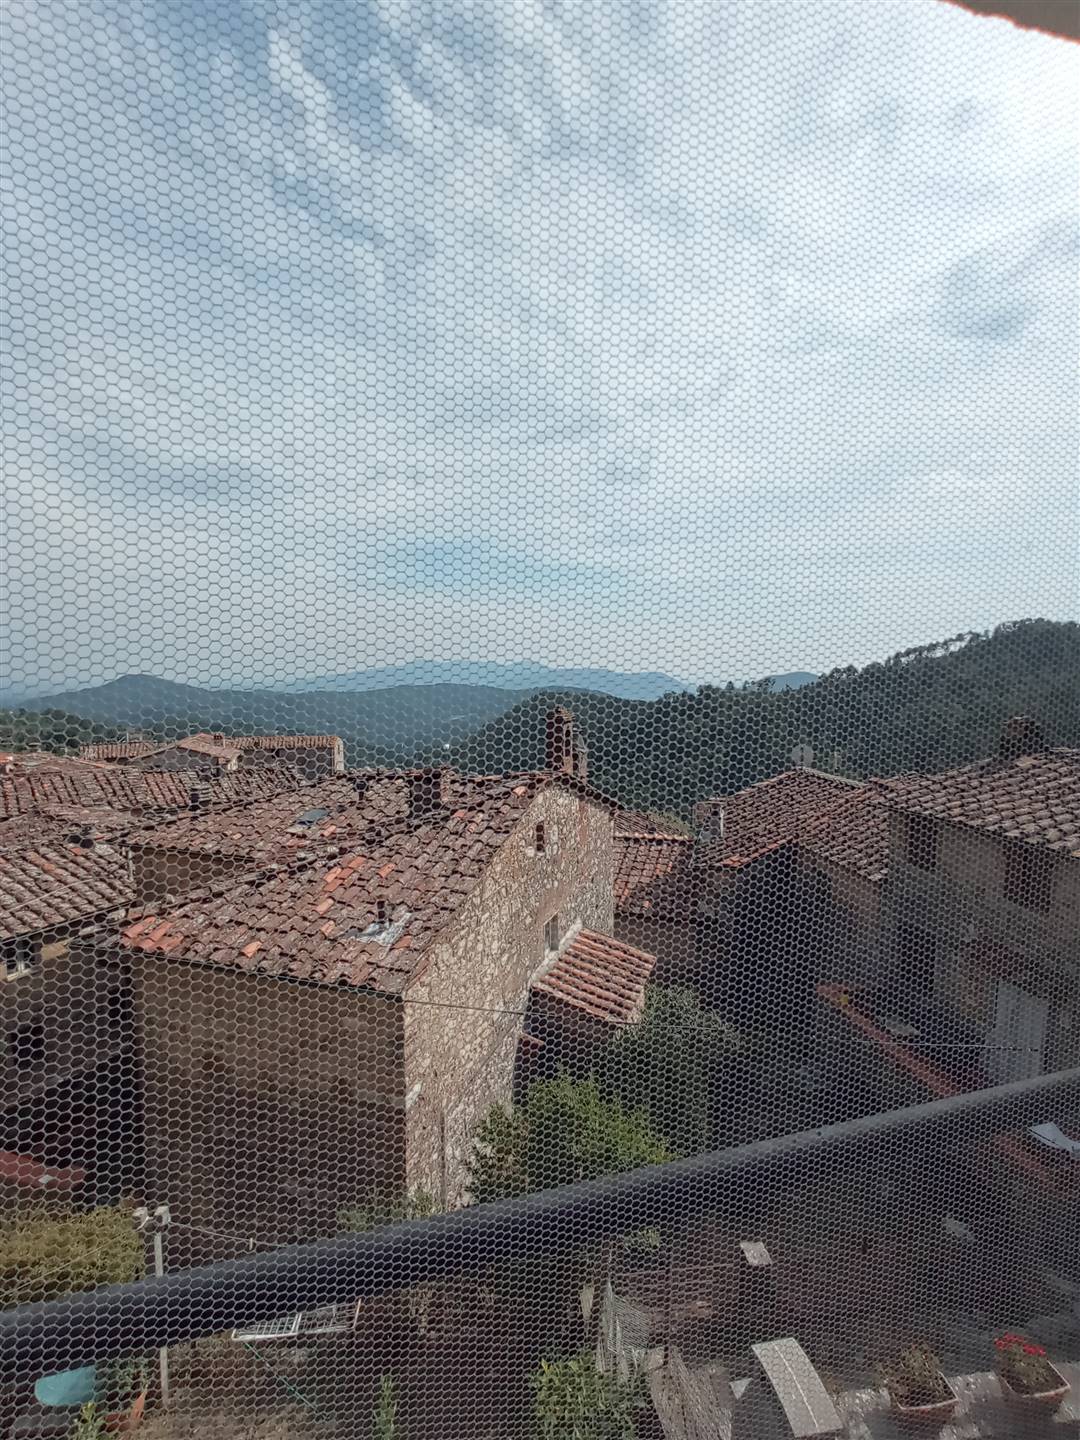 La vista sul borgo - The view over the village